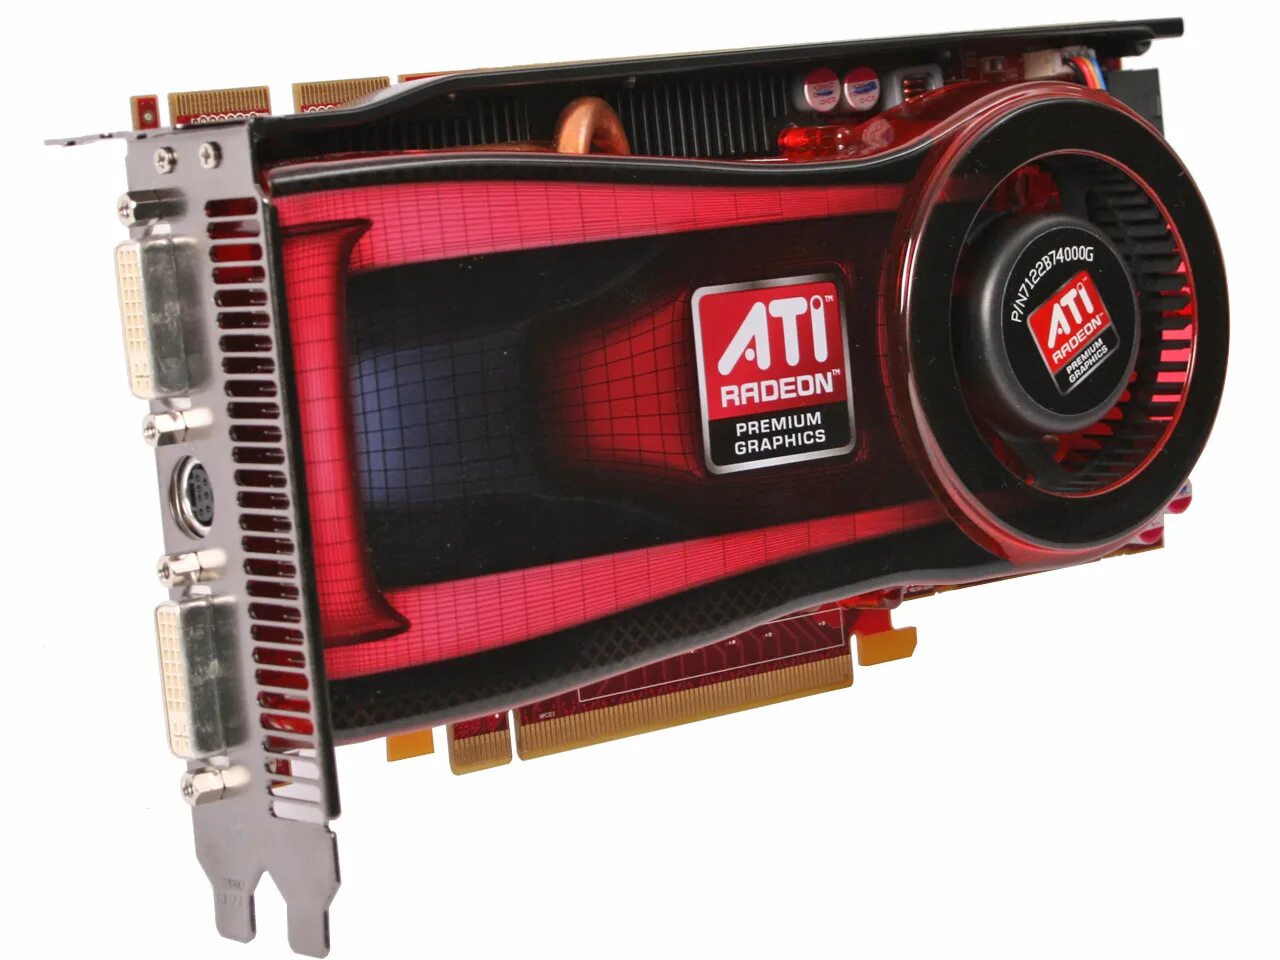 AMD ATI Radeon. 1 ati radeon